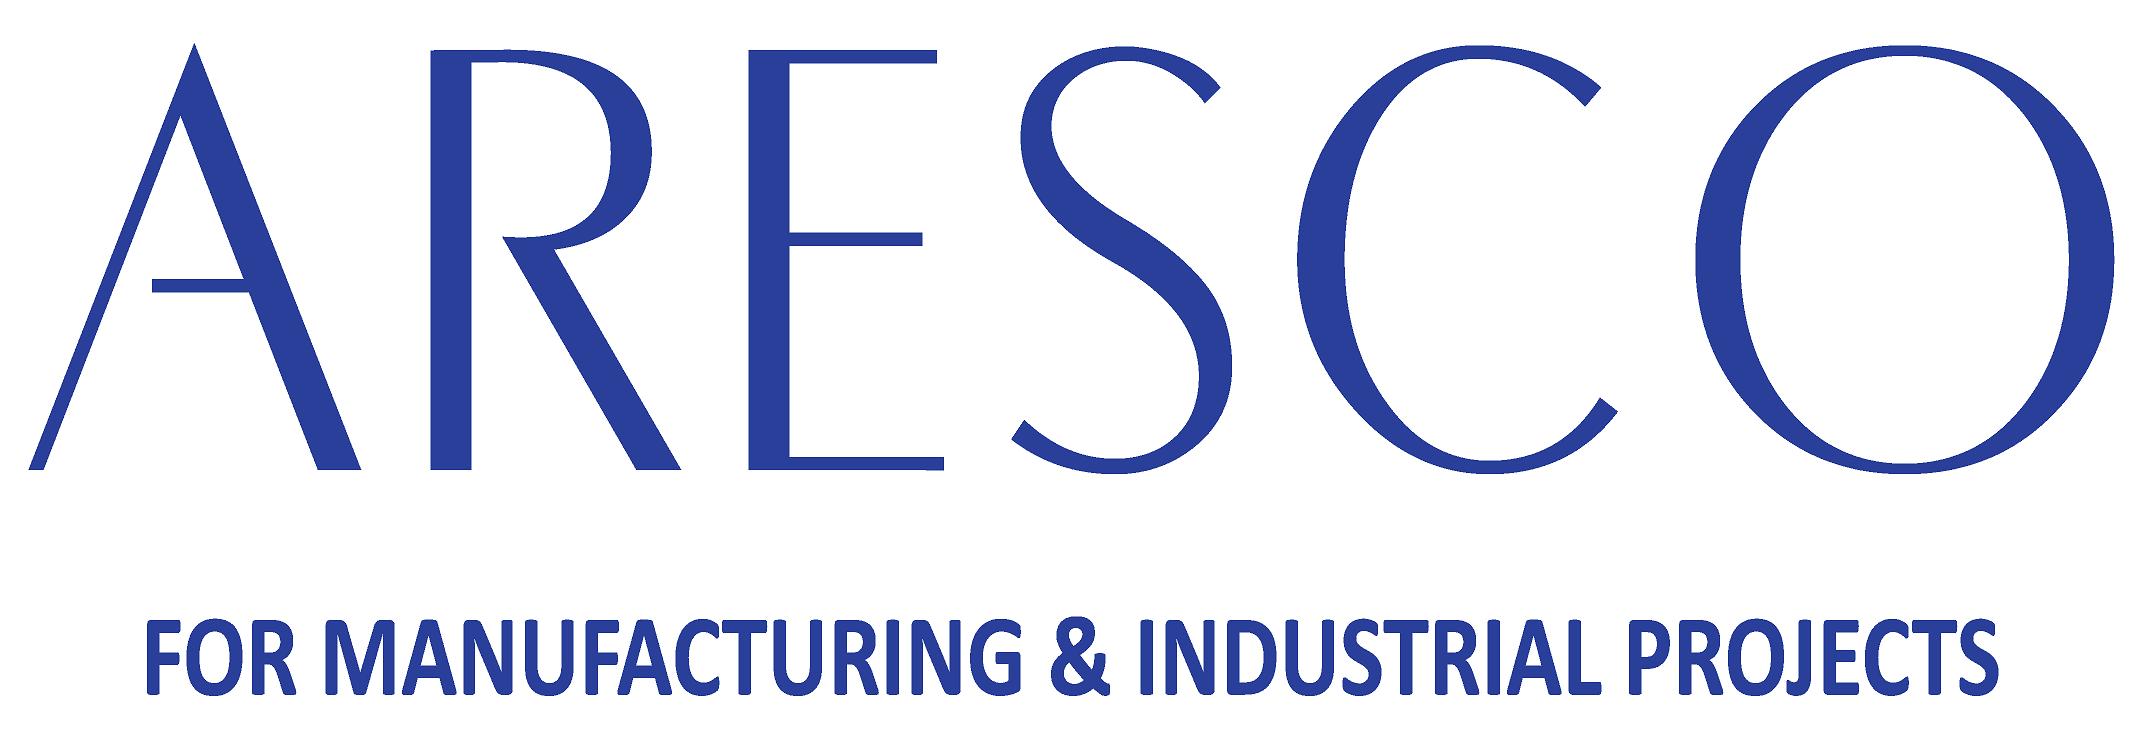 ARESCO Logo JPG